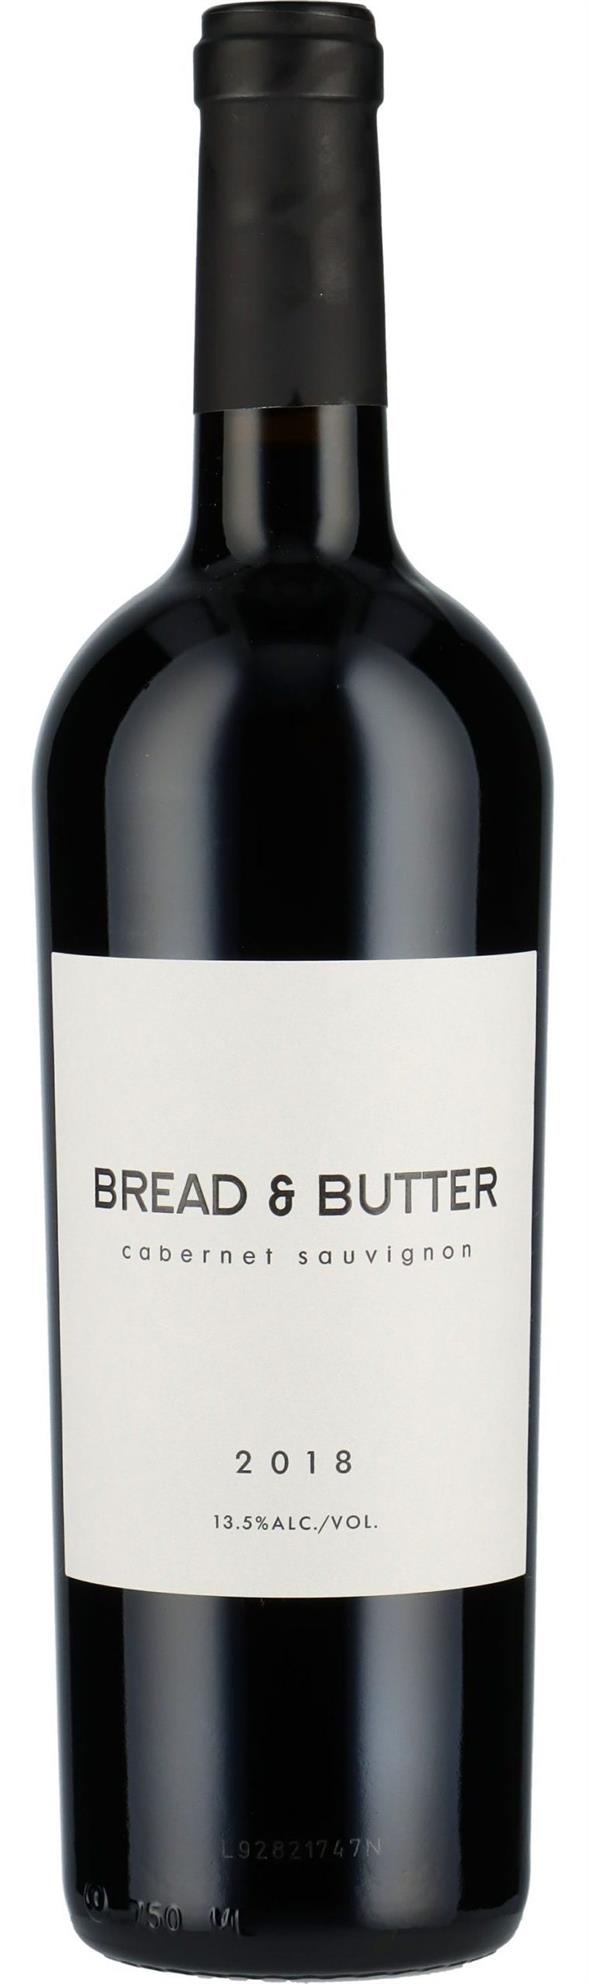 Bread & Butter - Cabernet Sauvignon